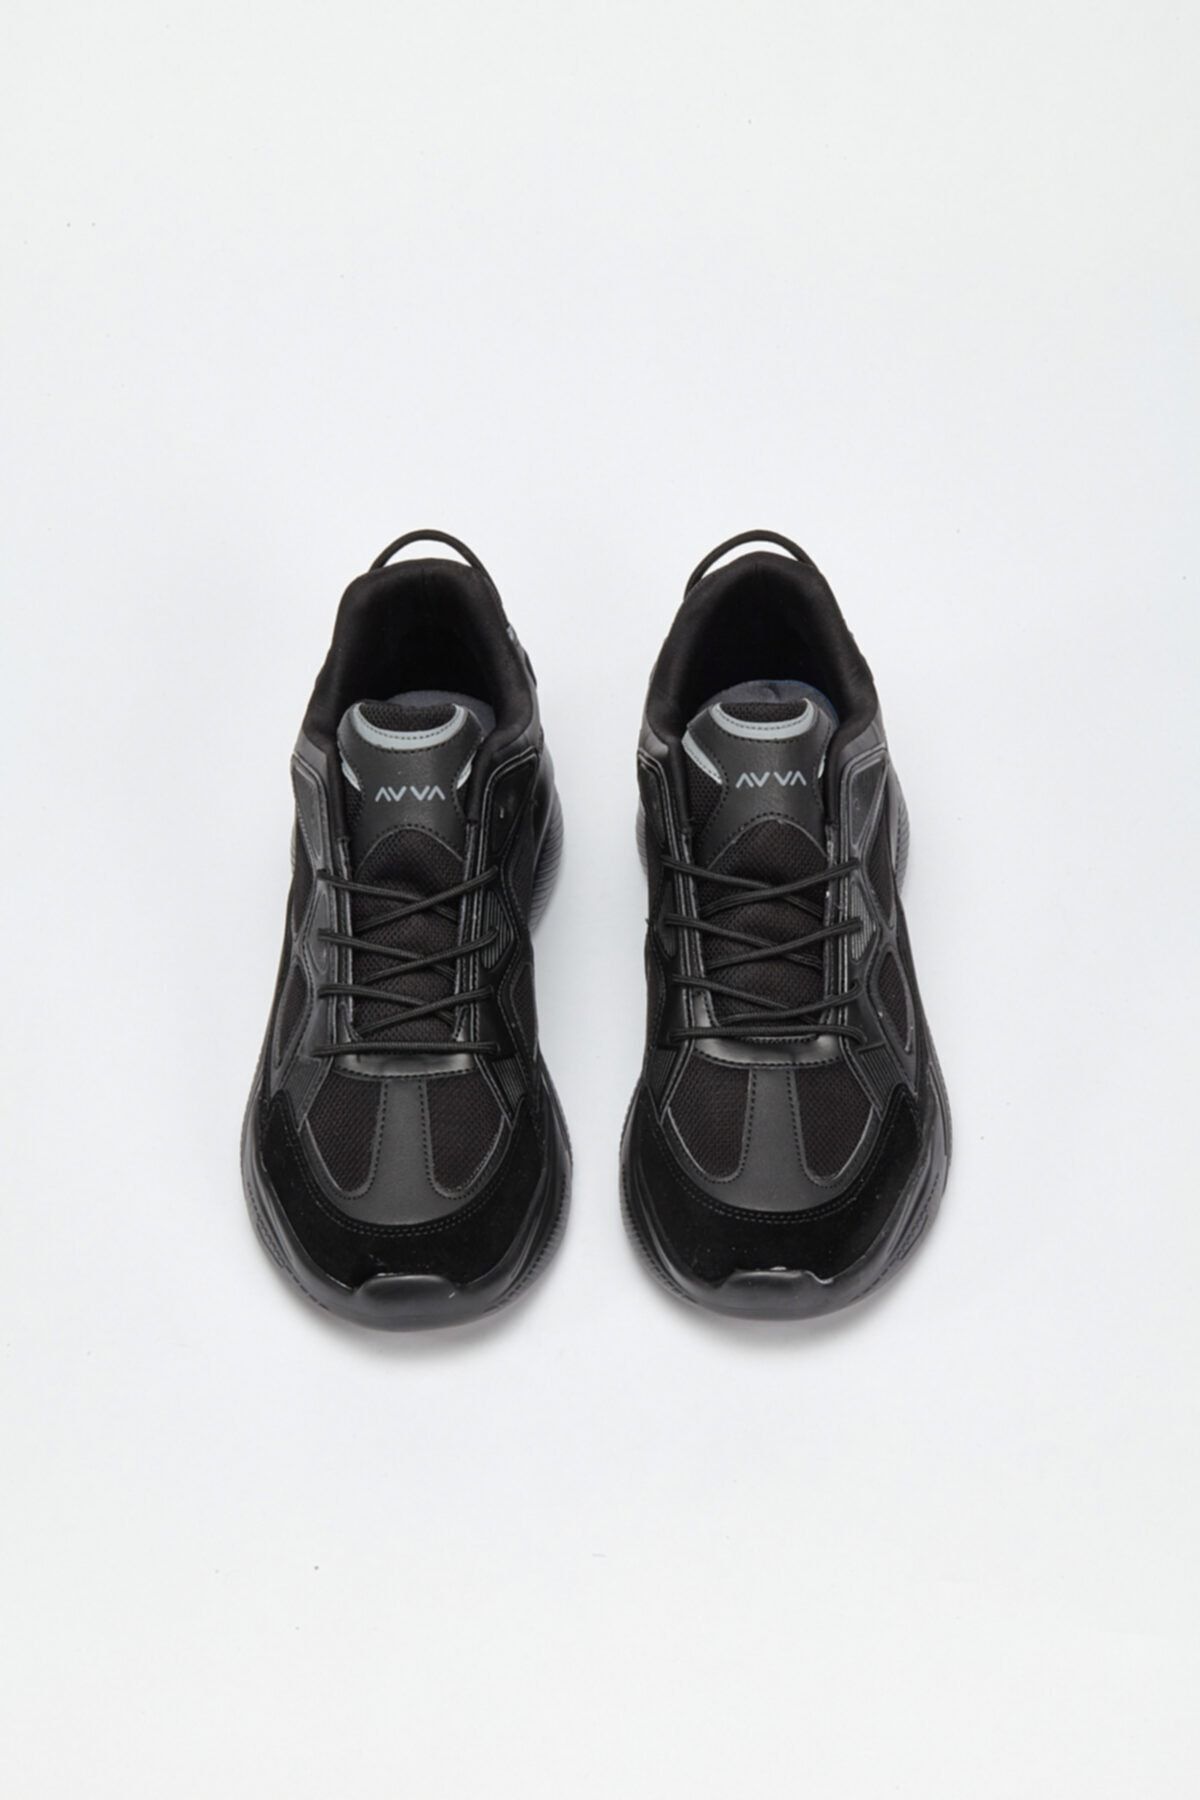 Avva Erkek Siyah Spor Ayakkabı A02y8018